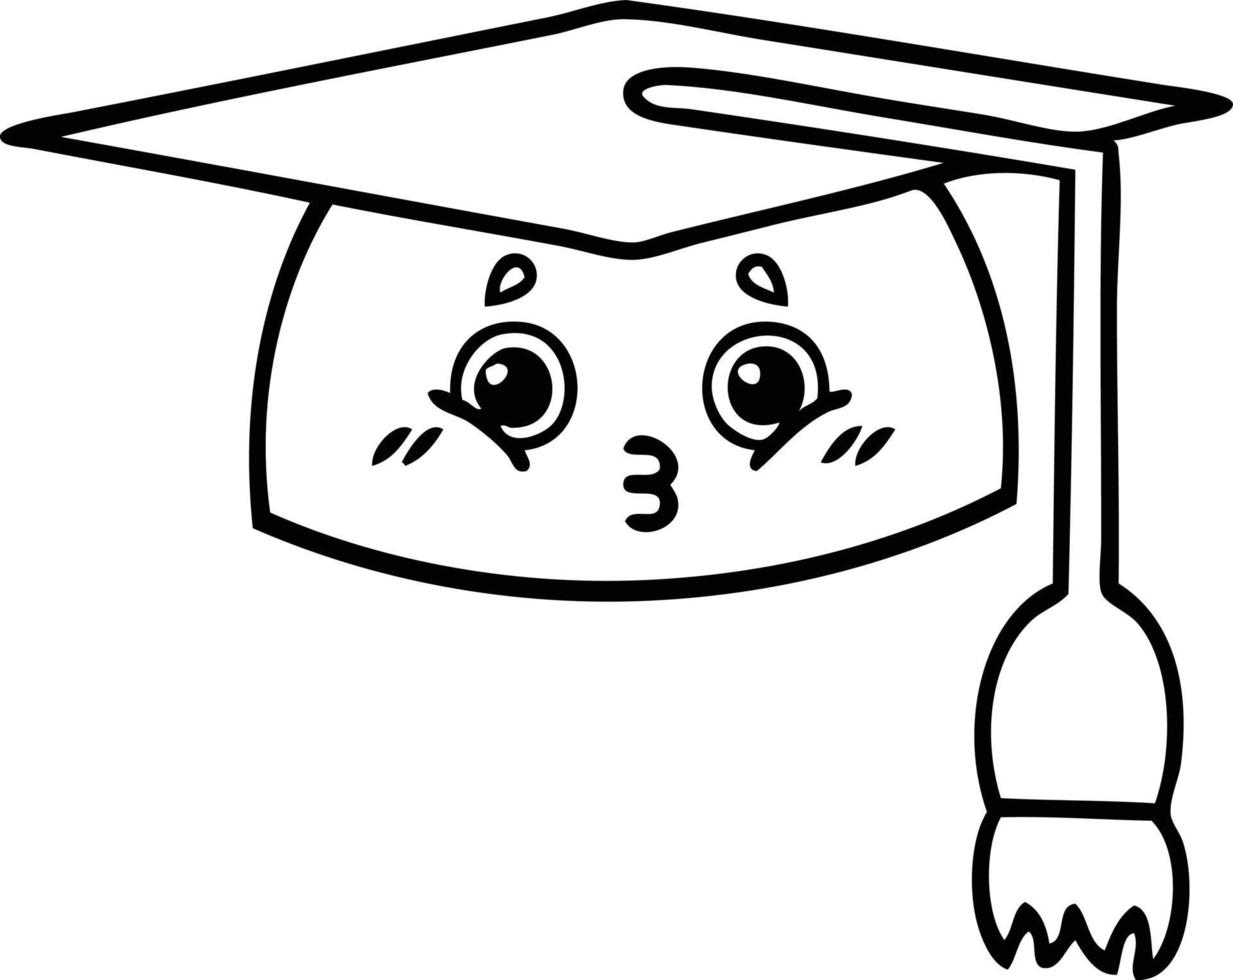 chapeau de graduation dessin animé dessin au trait vecteur